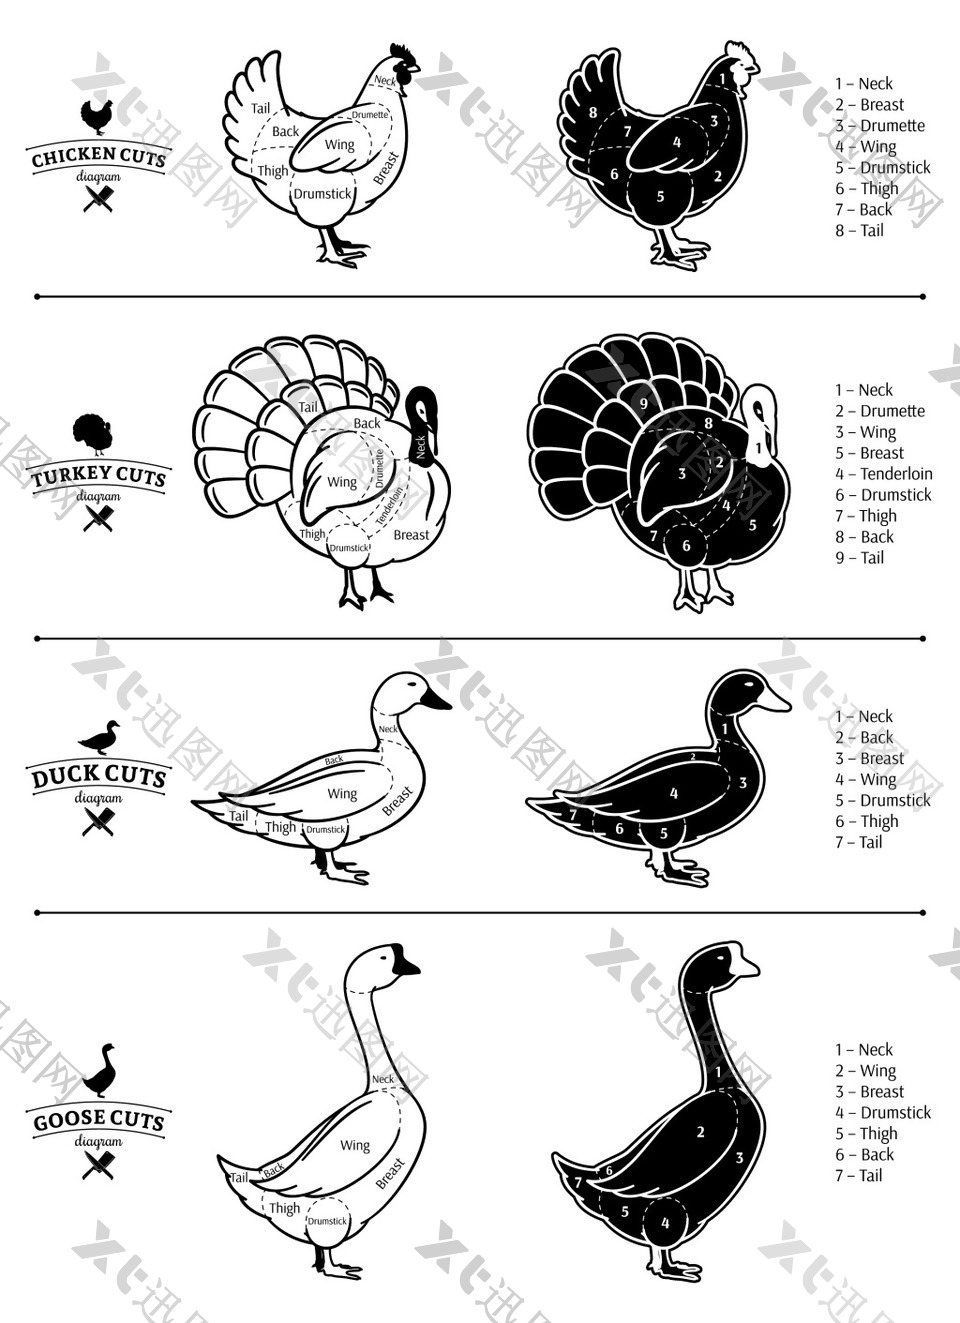 黑白手绘家禽动物插画